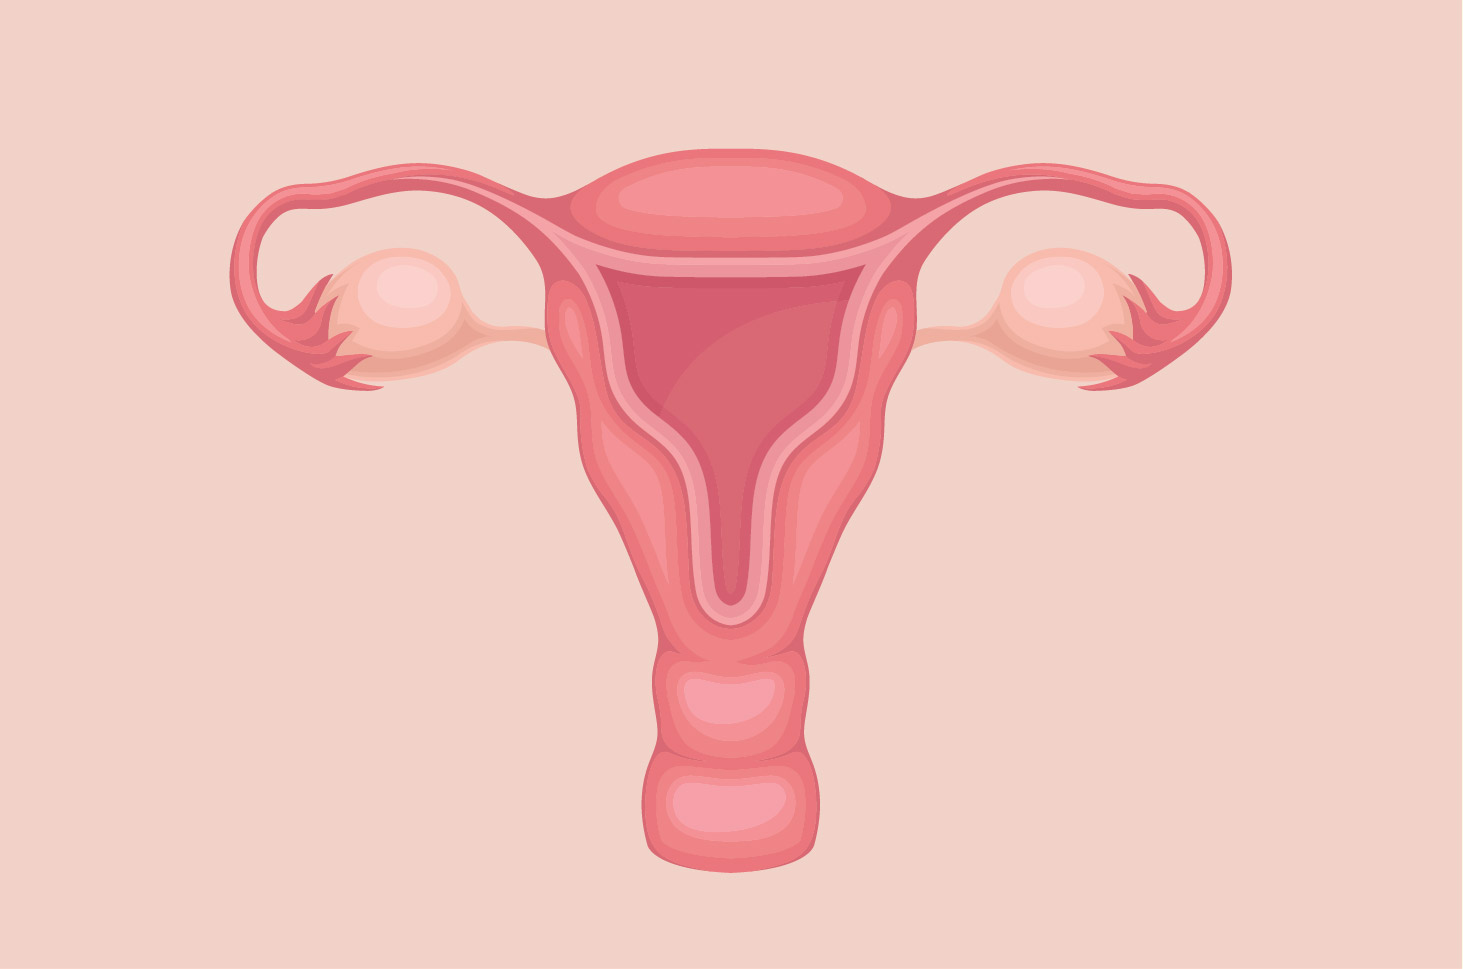 Objašnjenje funkcije maternice u žena